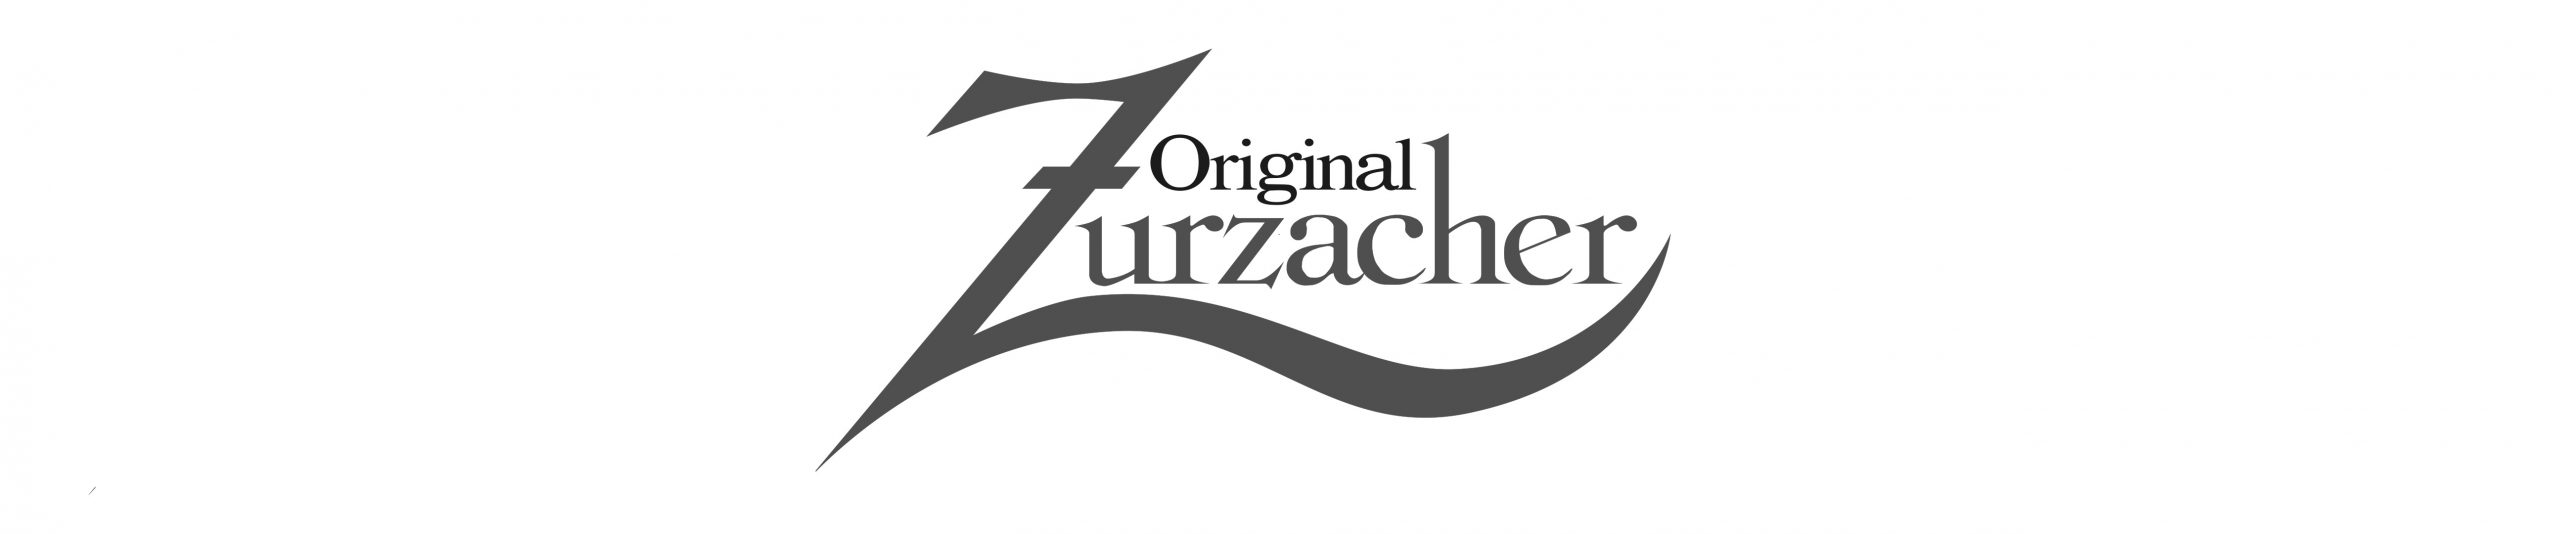 zurzacher